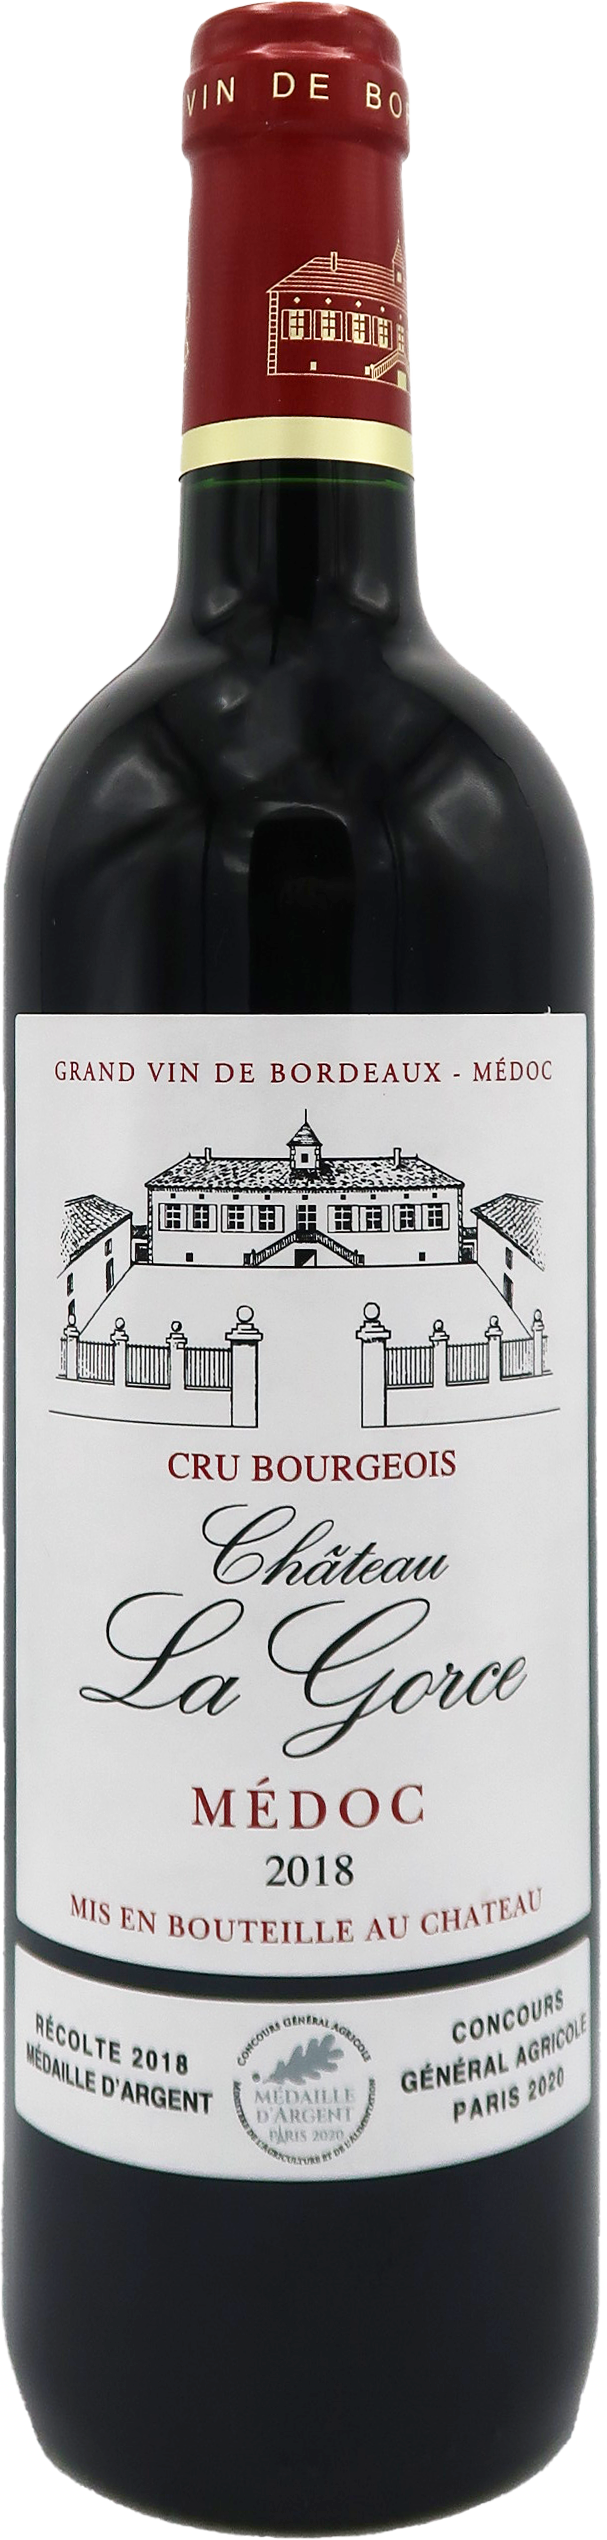 Château La Gorce 2018 - Médoc - Cru Bourgeois